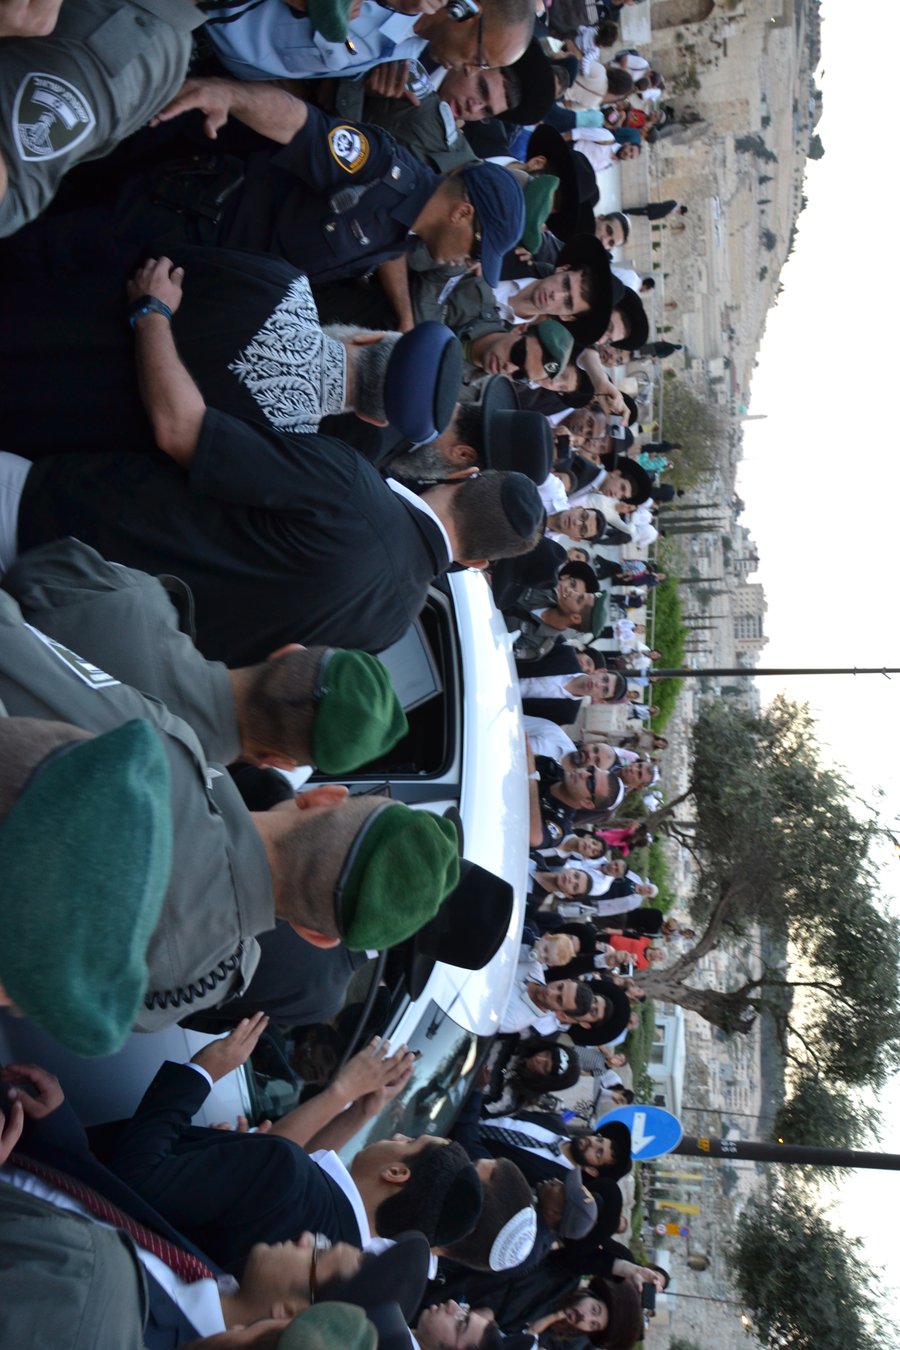 אלפים בעצרת תפילה לרפואת מרן הרב עובדיה יוסף